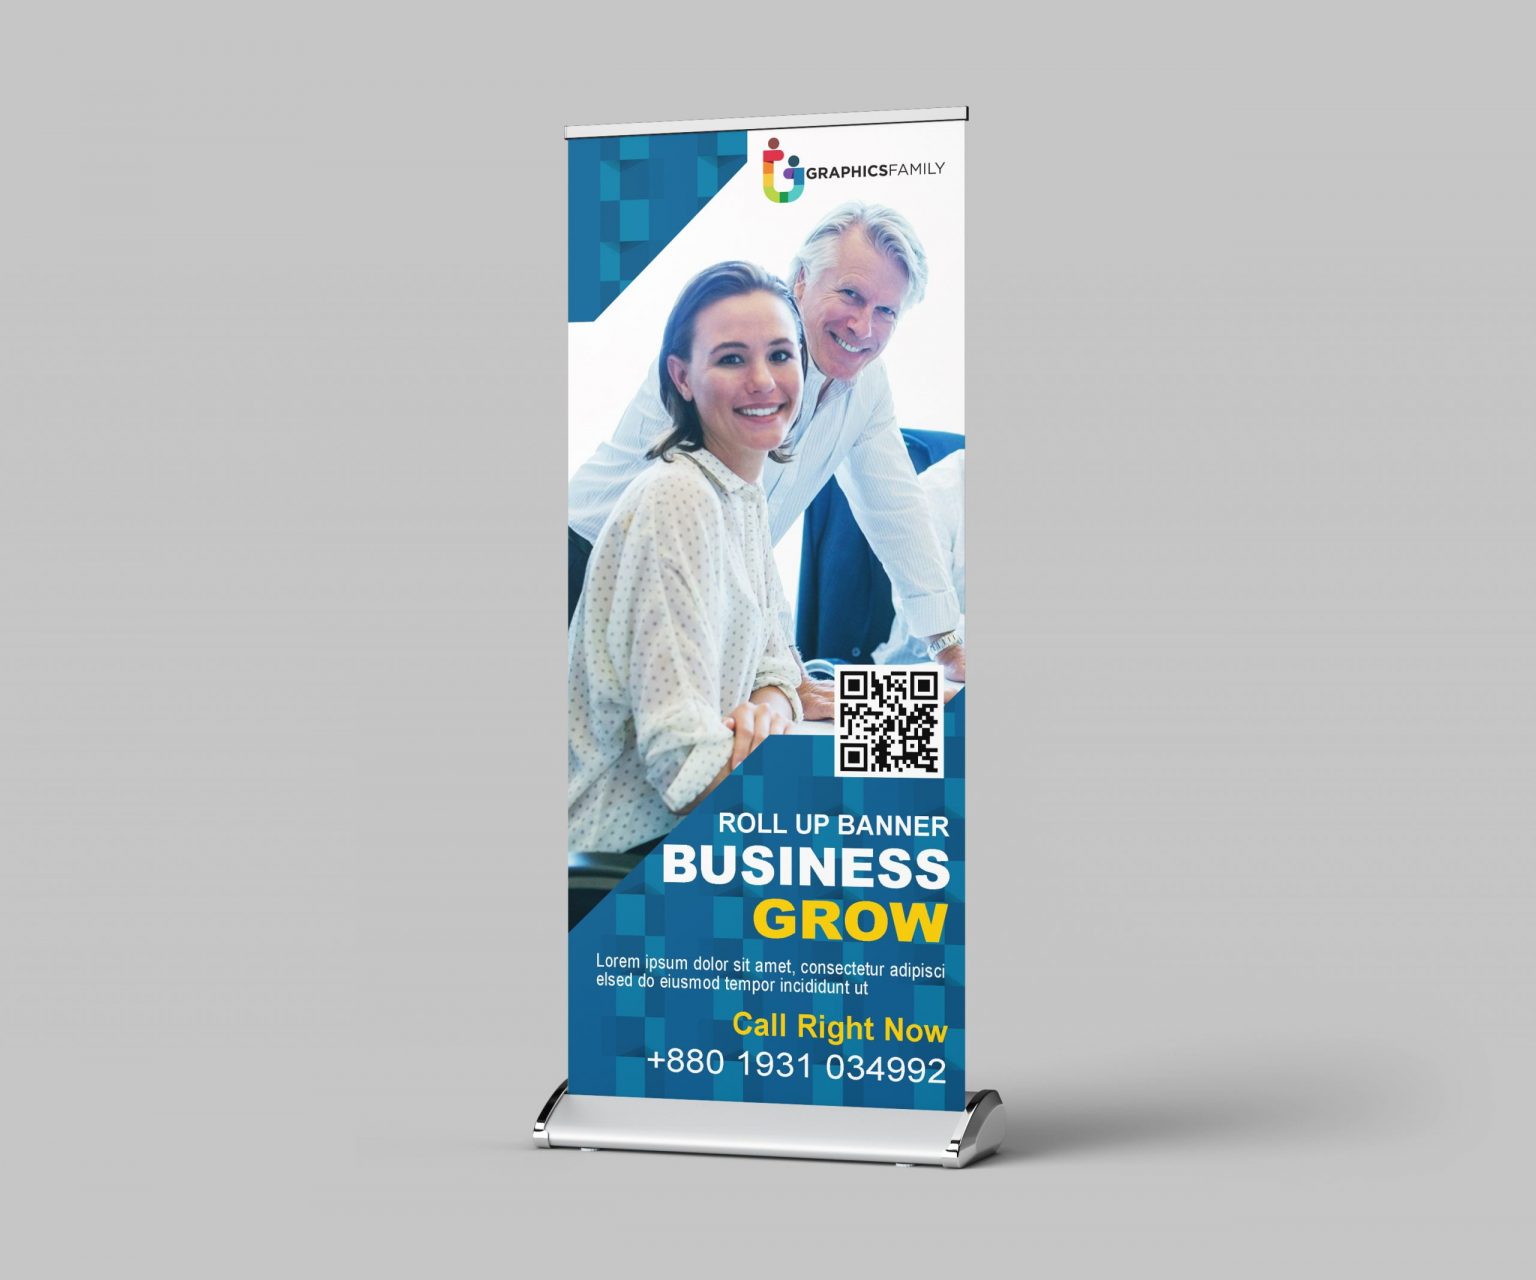 Modern Business Roll Up Banner Design Template Free Psd